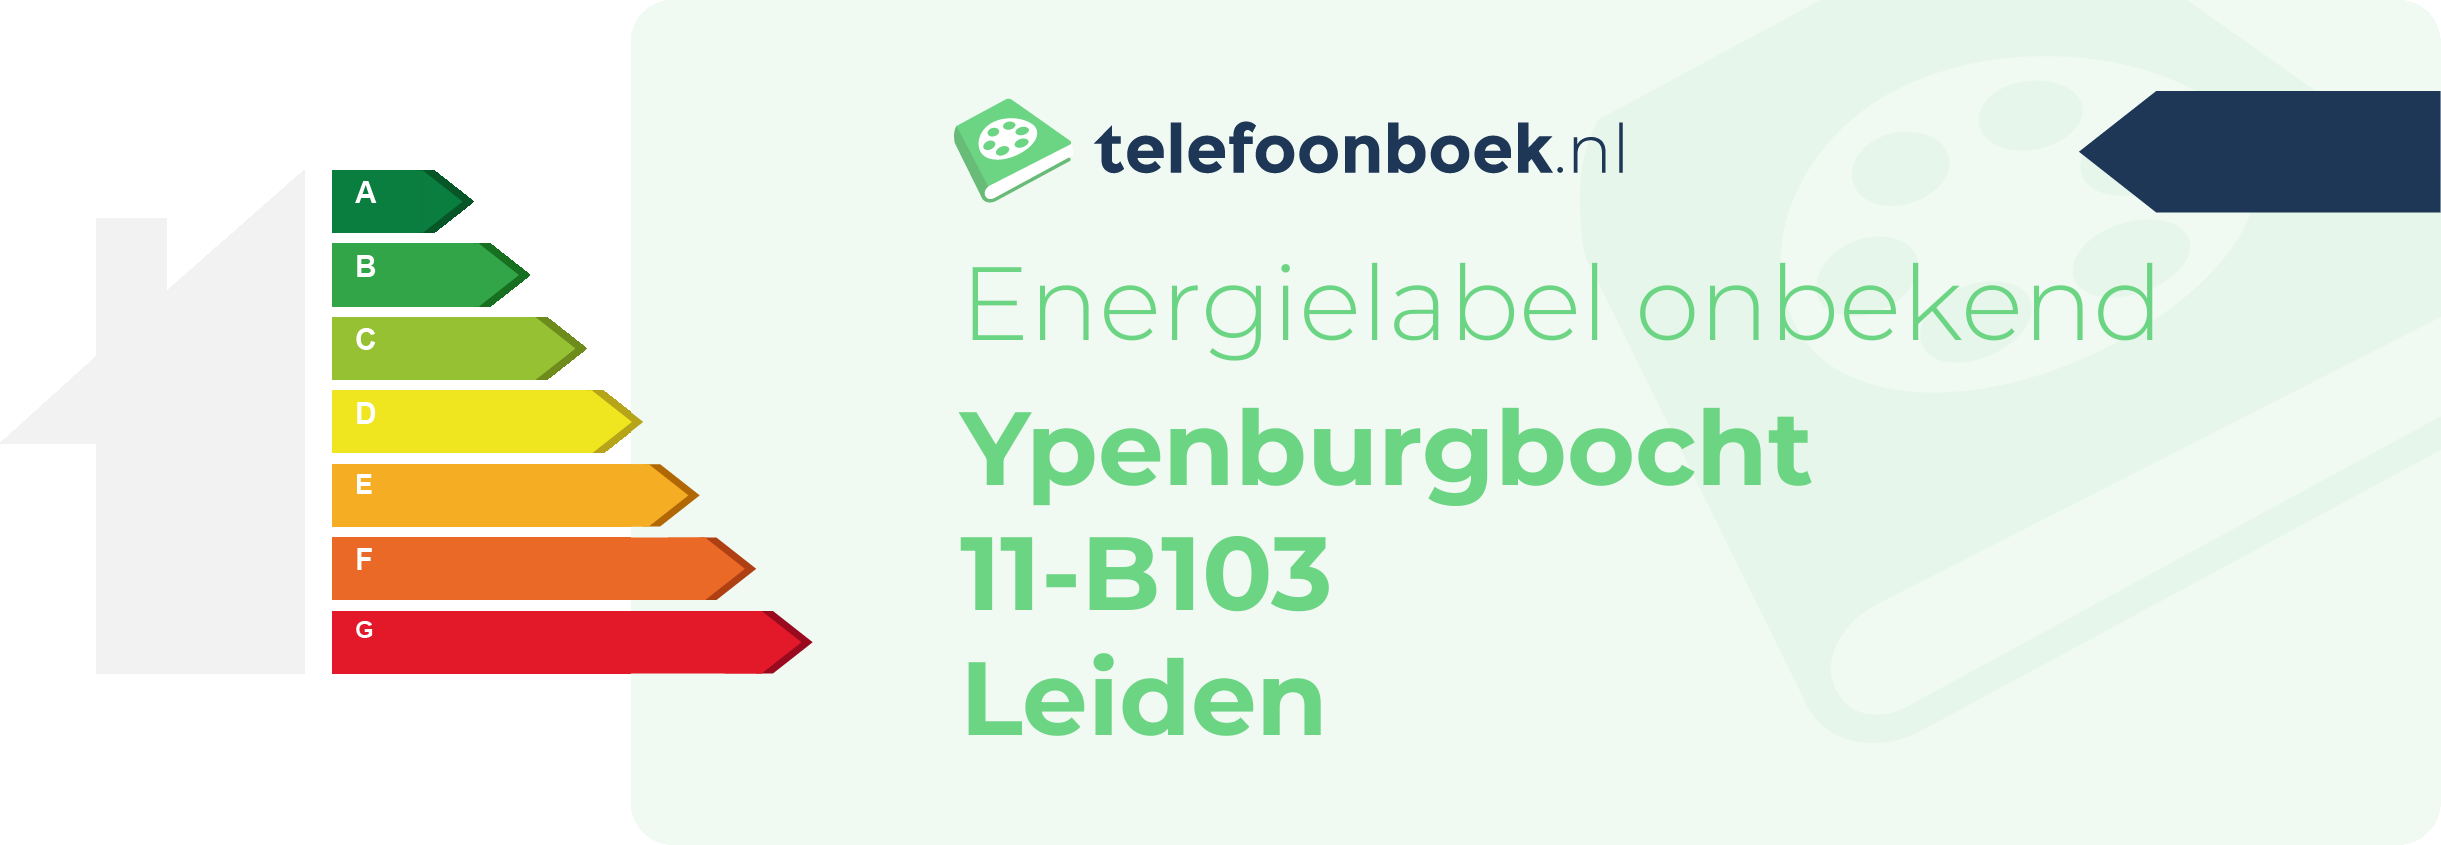 Energielabel Ypenburgbocht 11-B103 Leiden